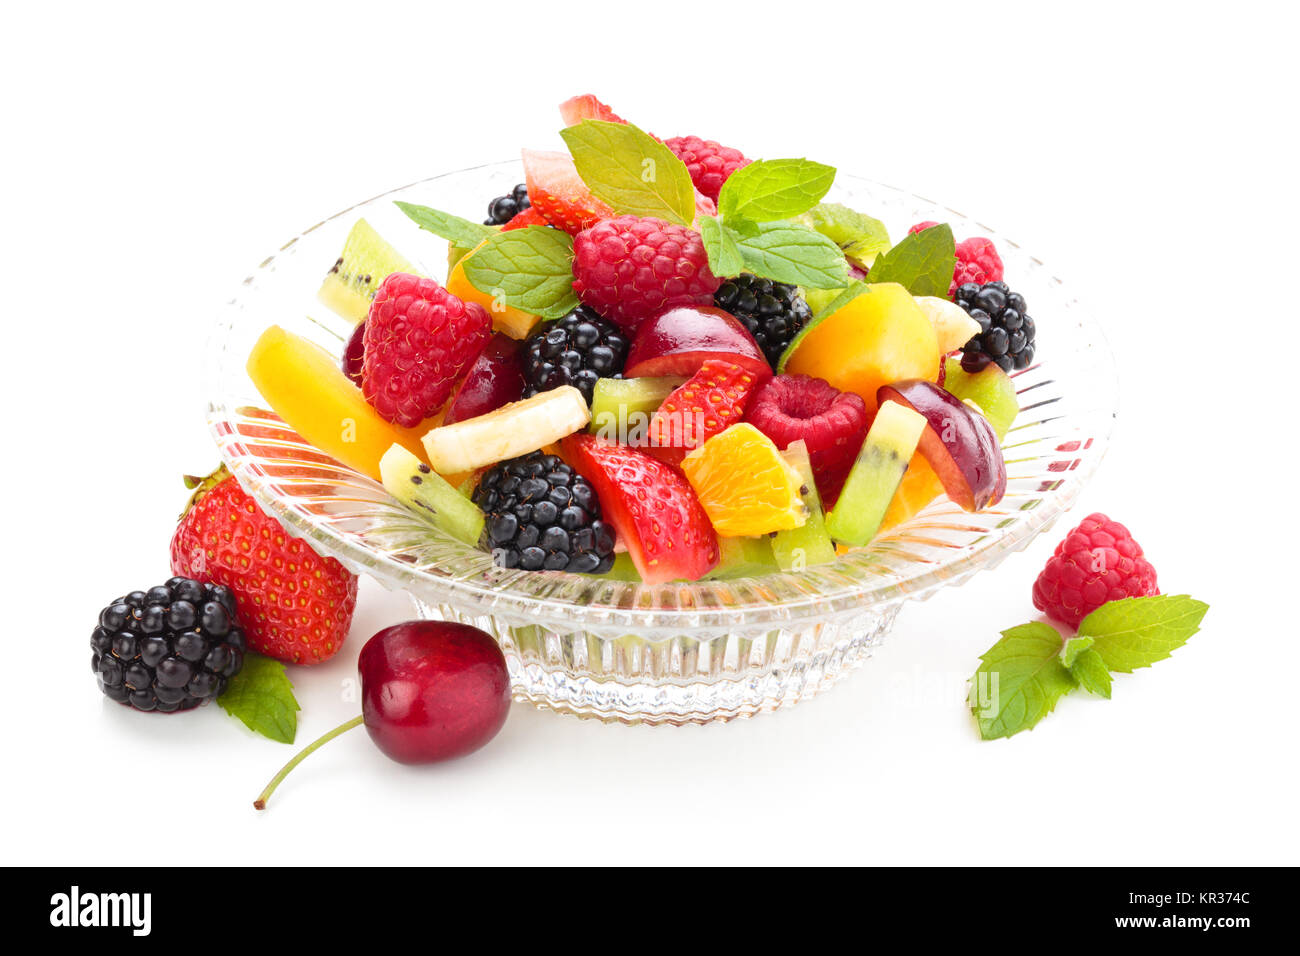 Fresh fruit salad. Stock Photo